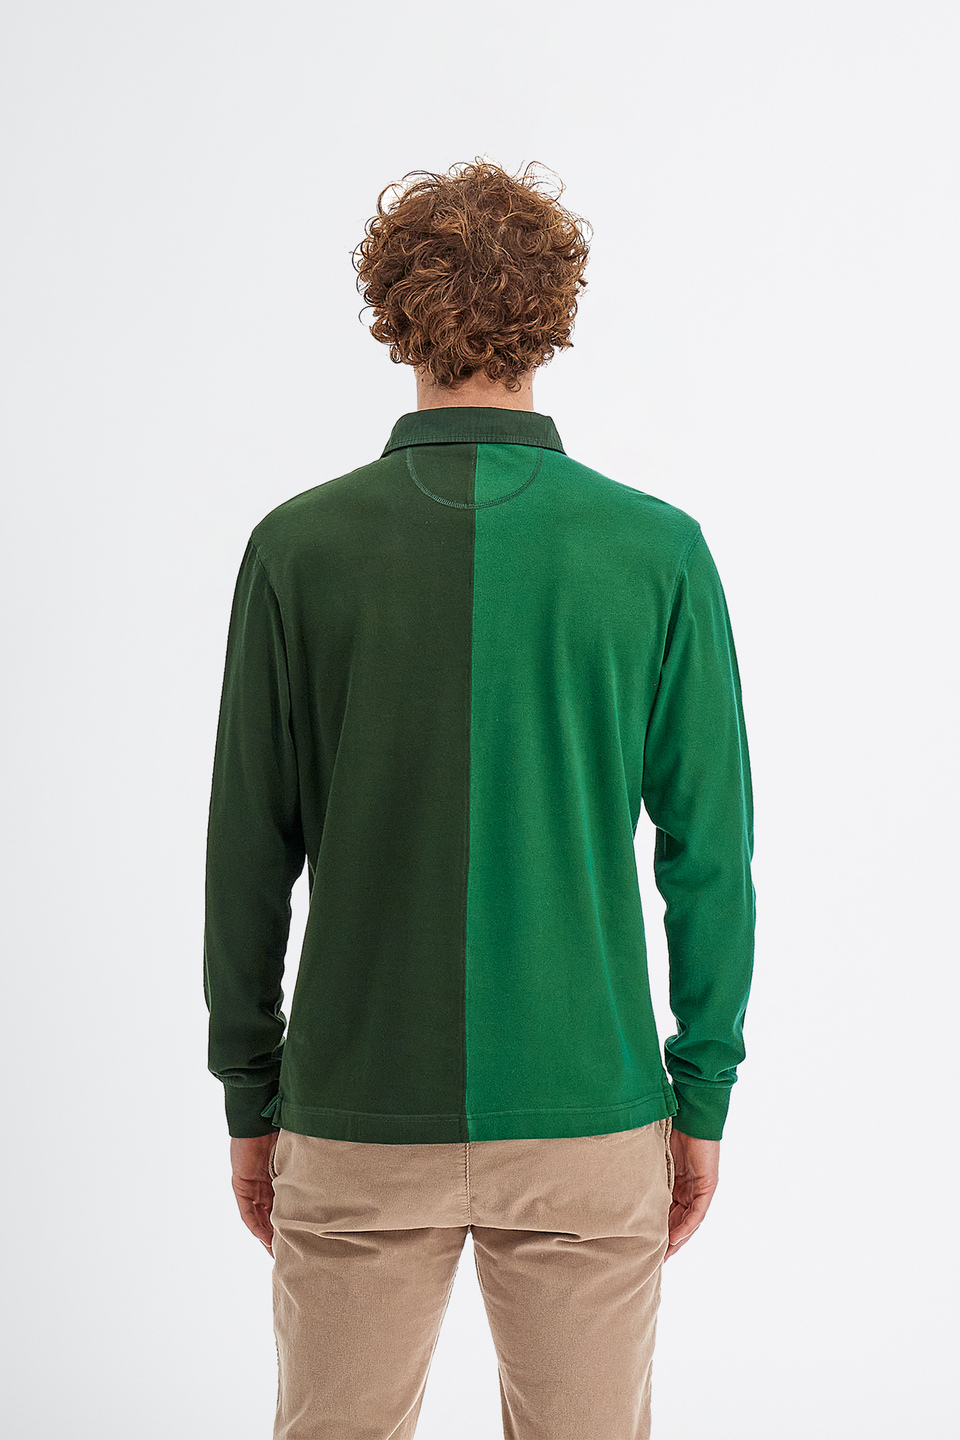 Herren-Poloshirt aus Baumwolle mit langen Ärmeln | La Martina - Official Online Shop